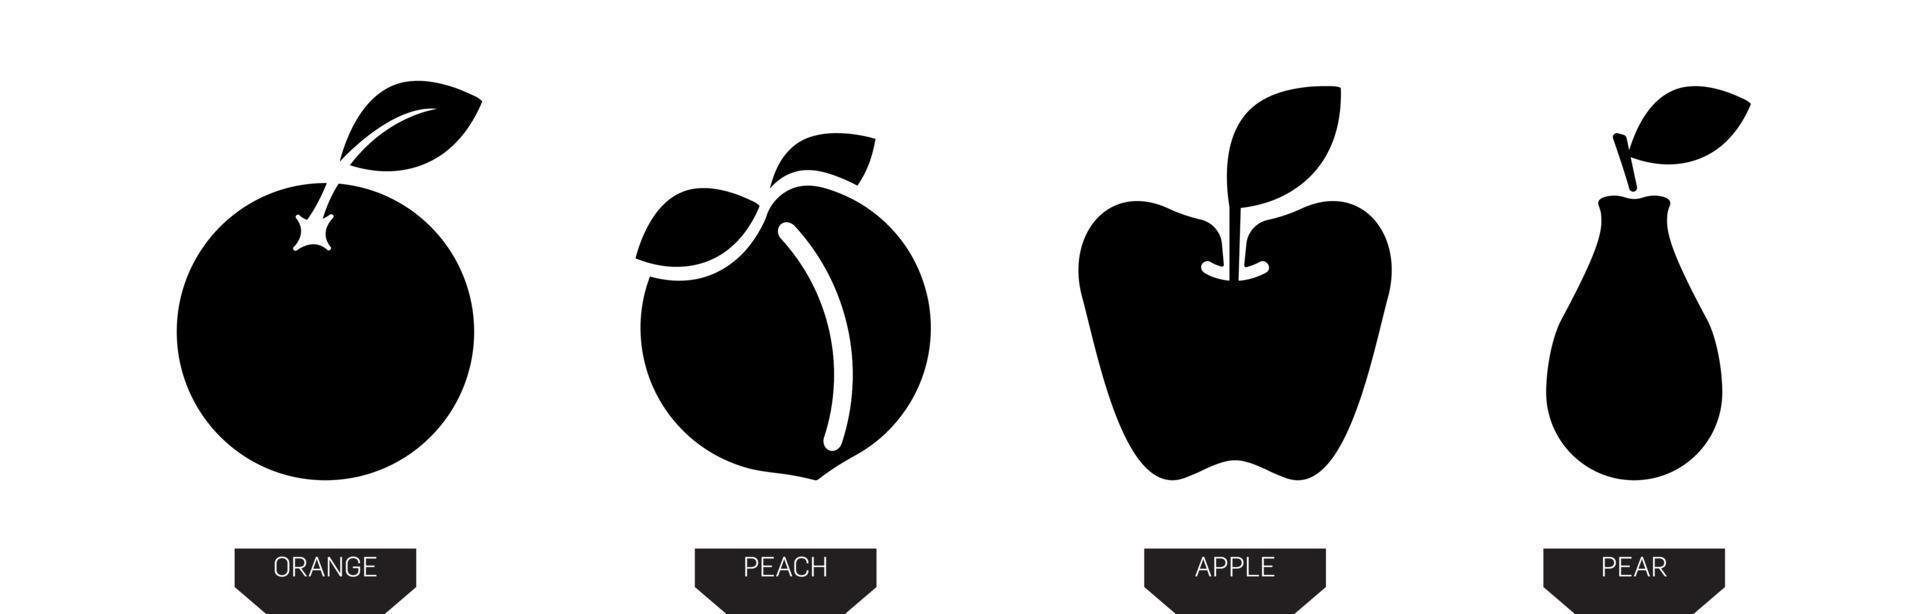 ícones de frutas. ilustração em vetor silhueta pera, maçã, laranja e pêssego na cor preta isolada no fundo branco. ícone de fruta silet. design de arte de linha moderna.